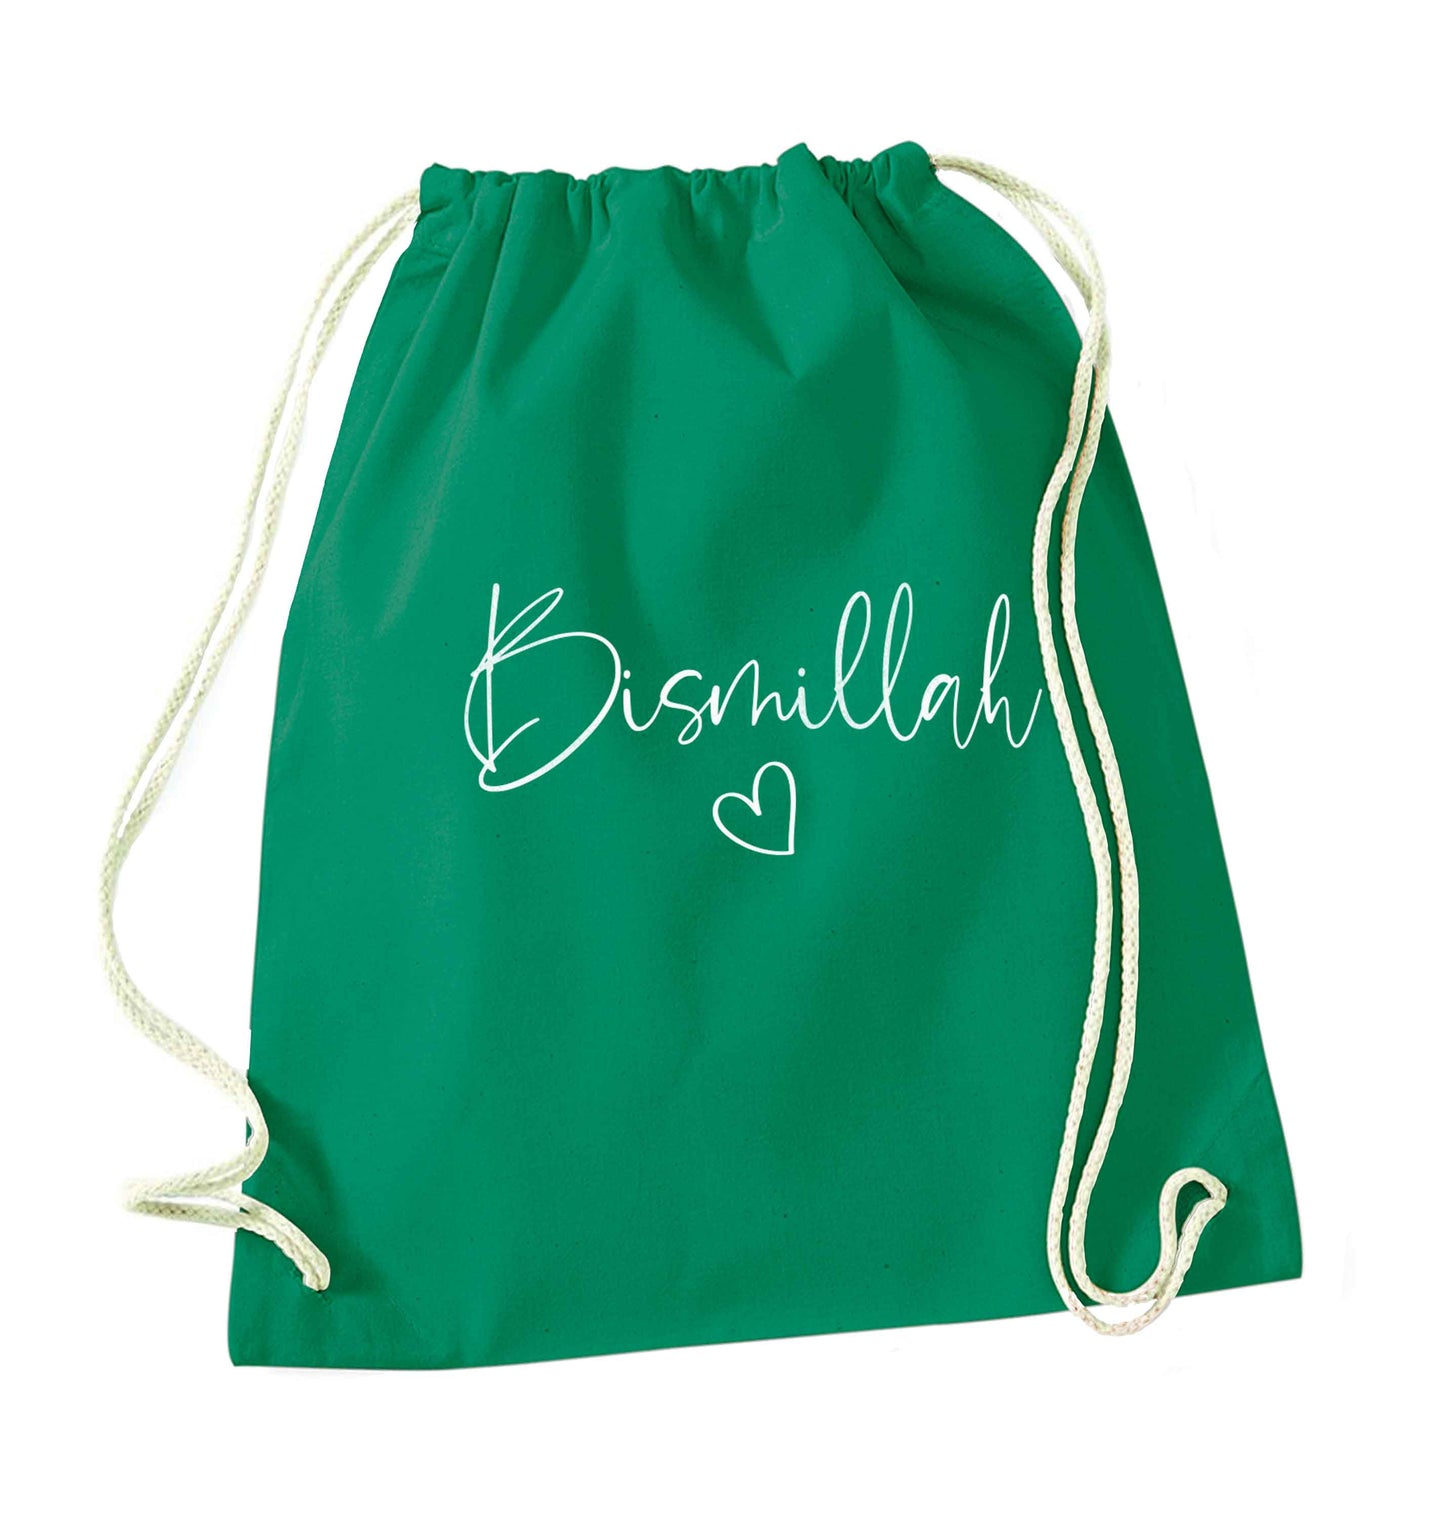 Bismillah green drawstring bag